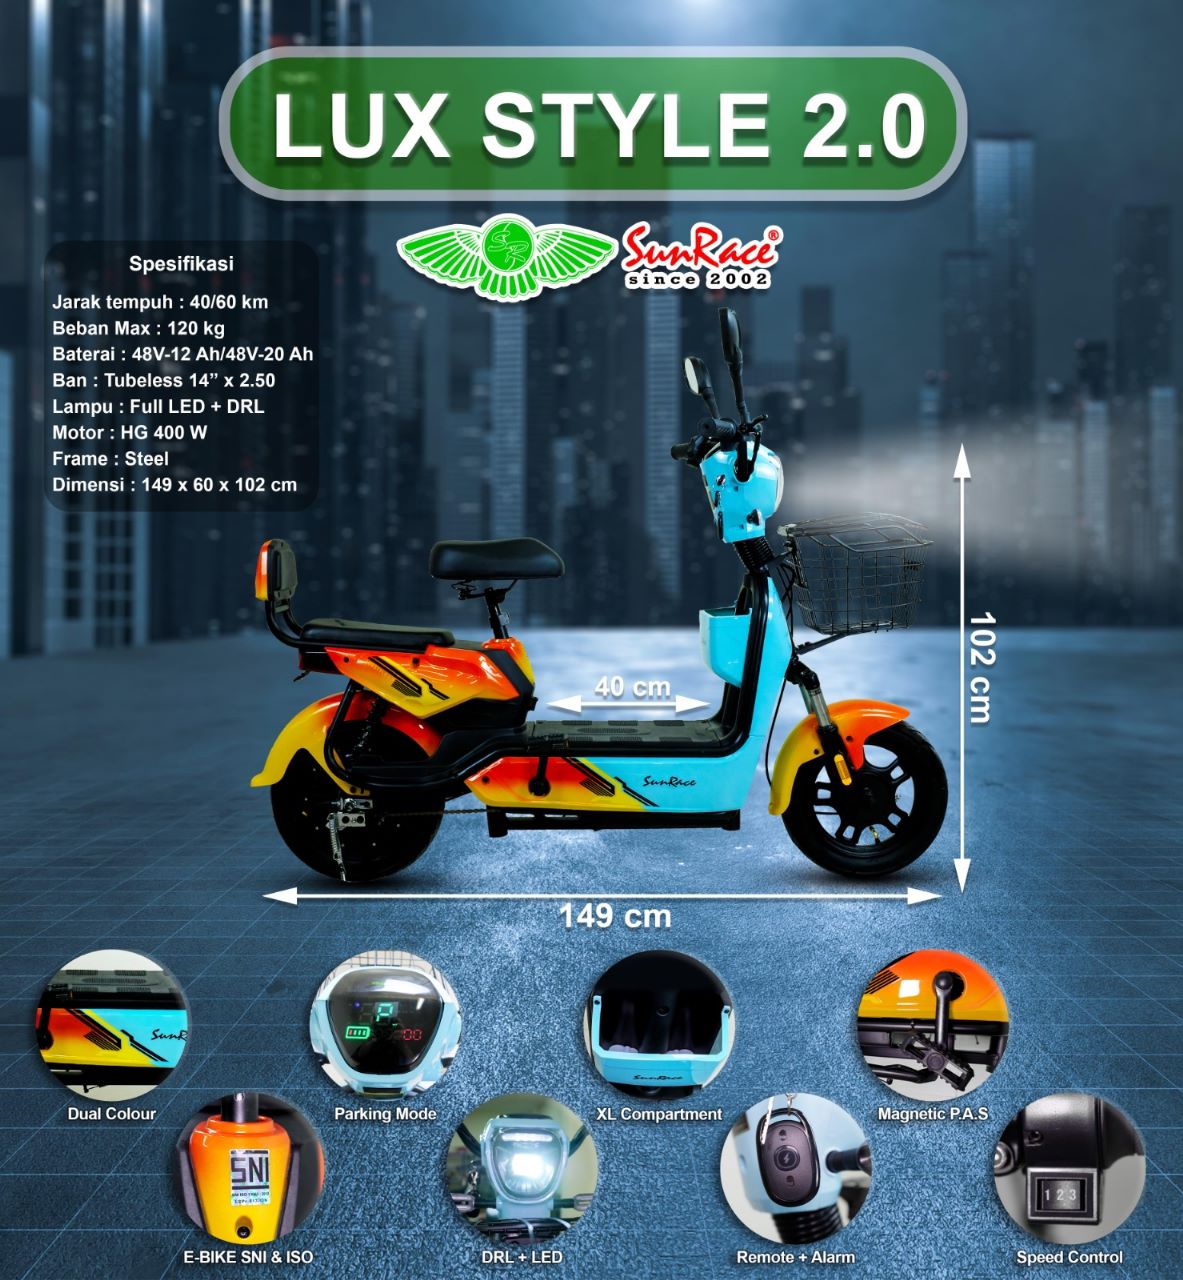 Sunrace Lux Style 2.0